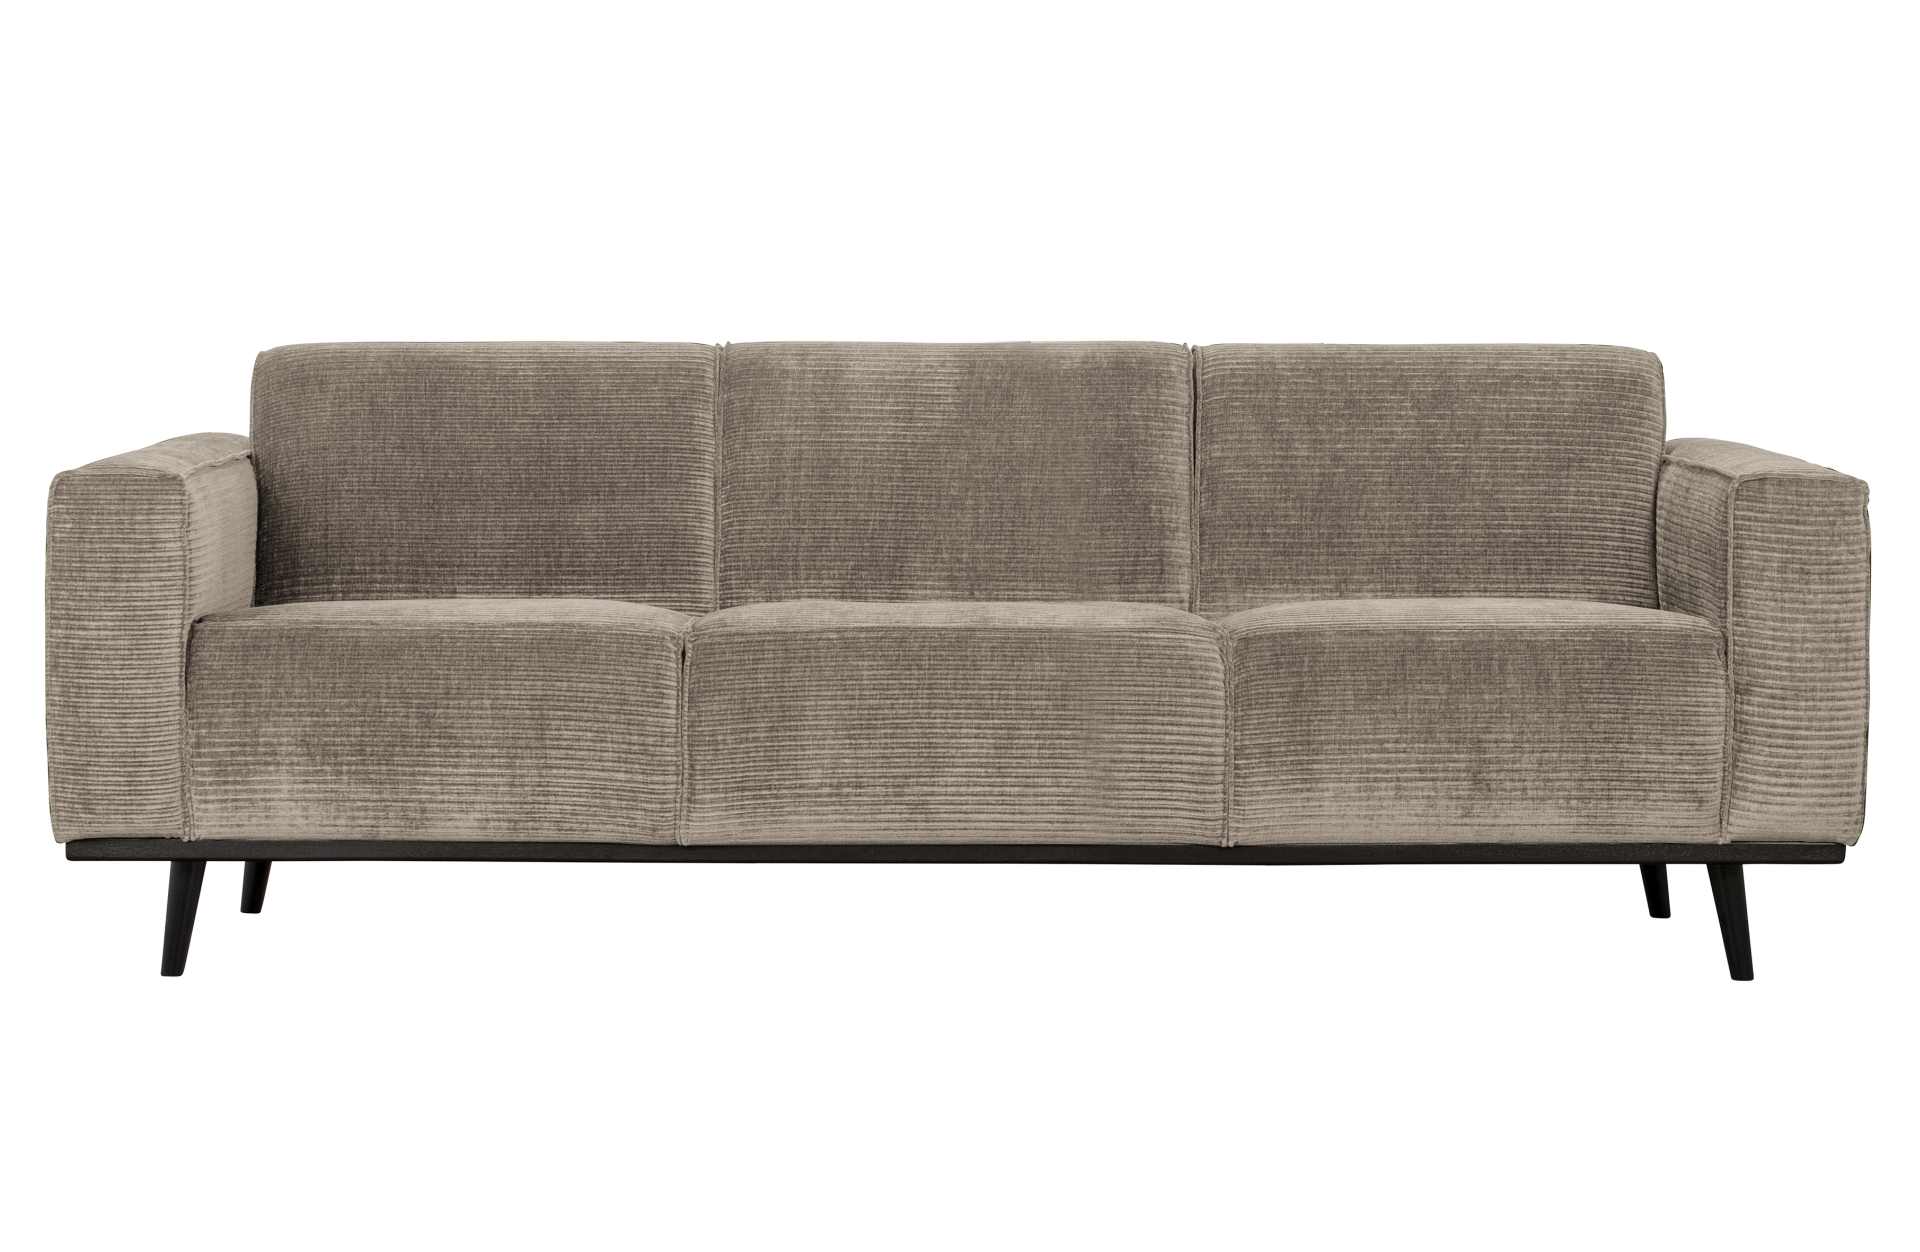 Das Sofa Statement überzeugt mit seinem modernen Design. Gefertigt wurde es aus gewebten Jacquard, welches einen Beige Farbton besitzen. Das Gestell ist aus Birkenholz und hat eine schwarze Farbe. Das Sofa hat eine Breite von 230 cm.